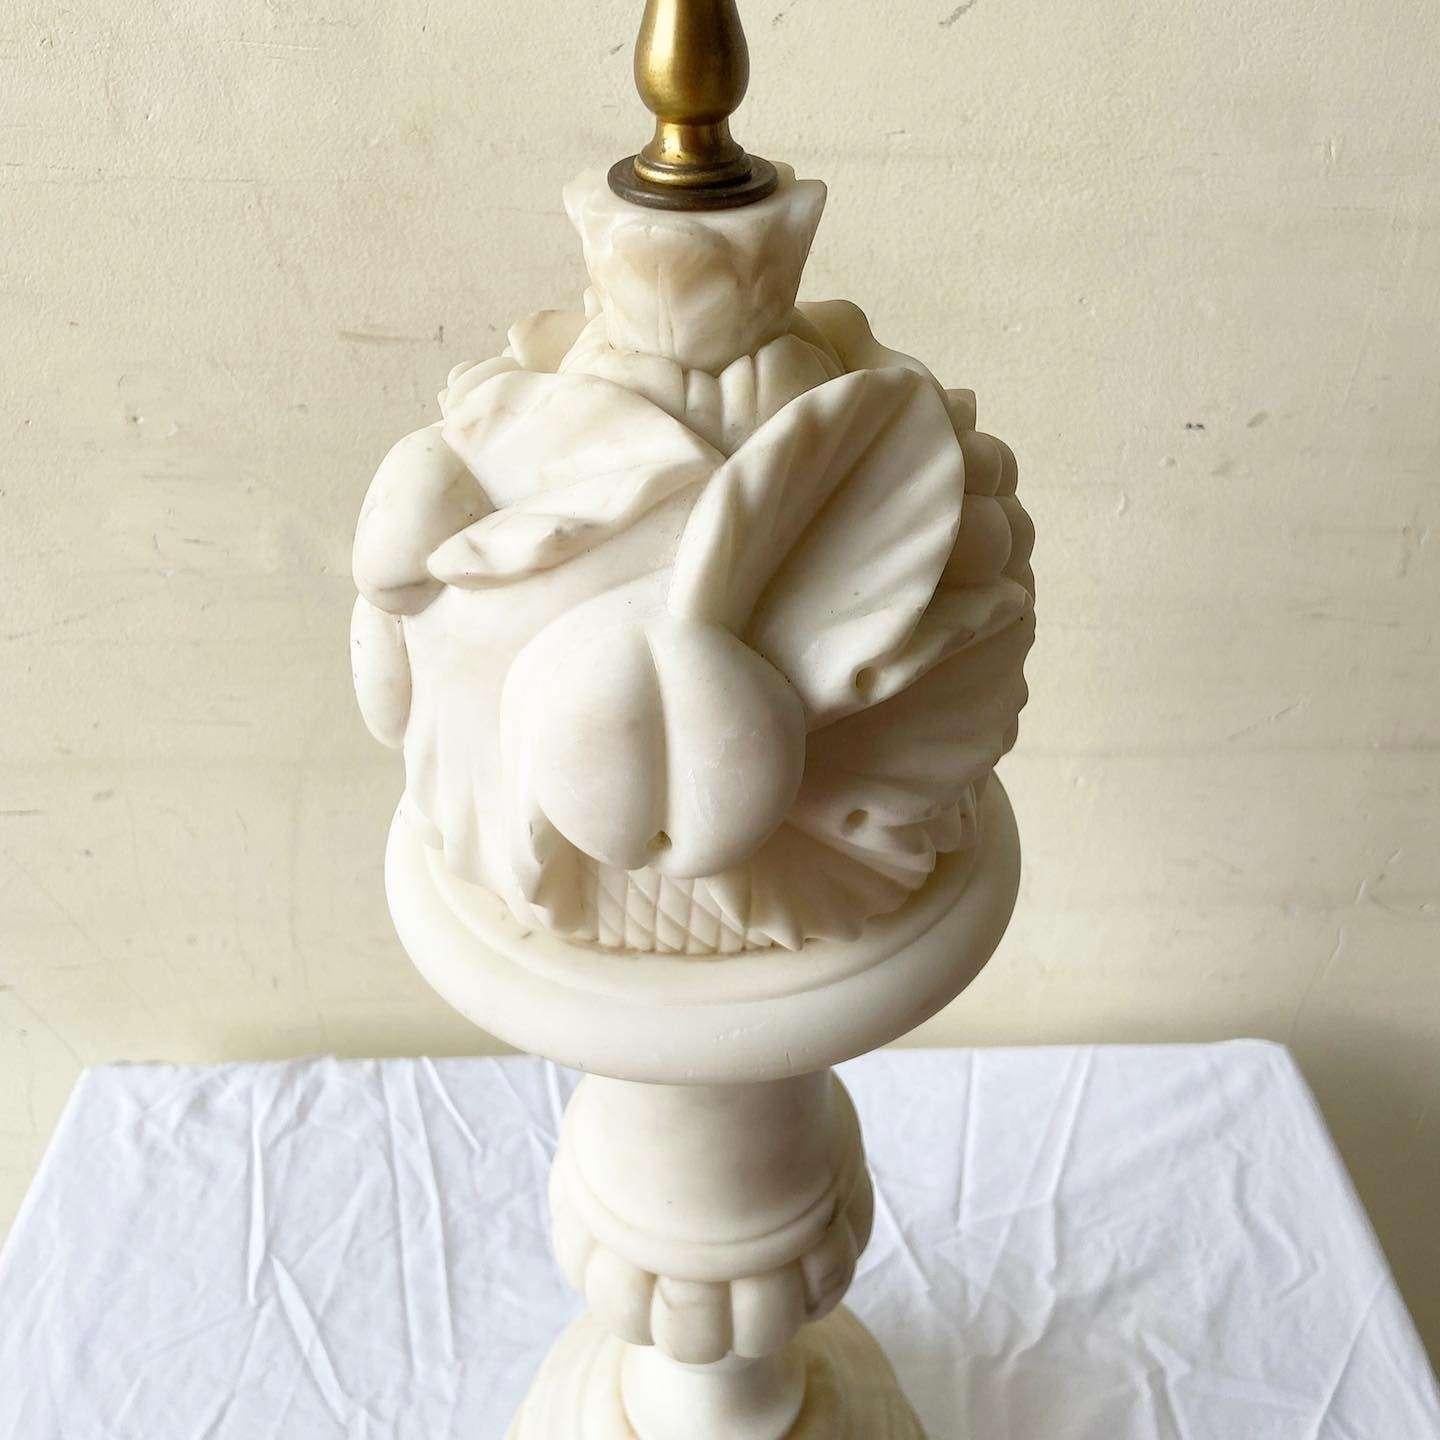 alabaster lamp vintage